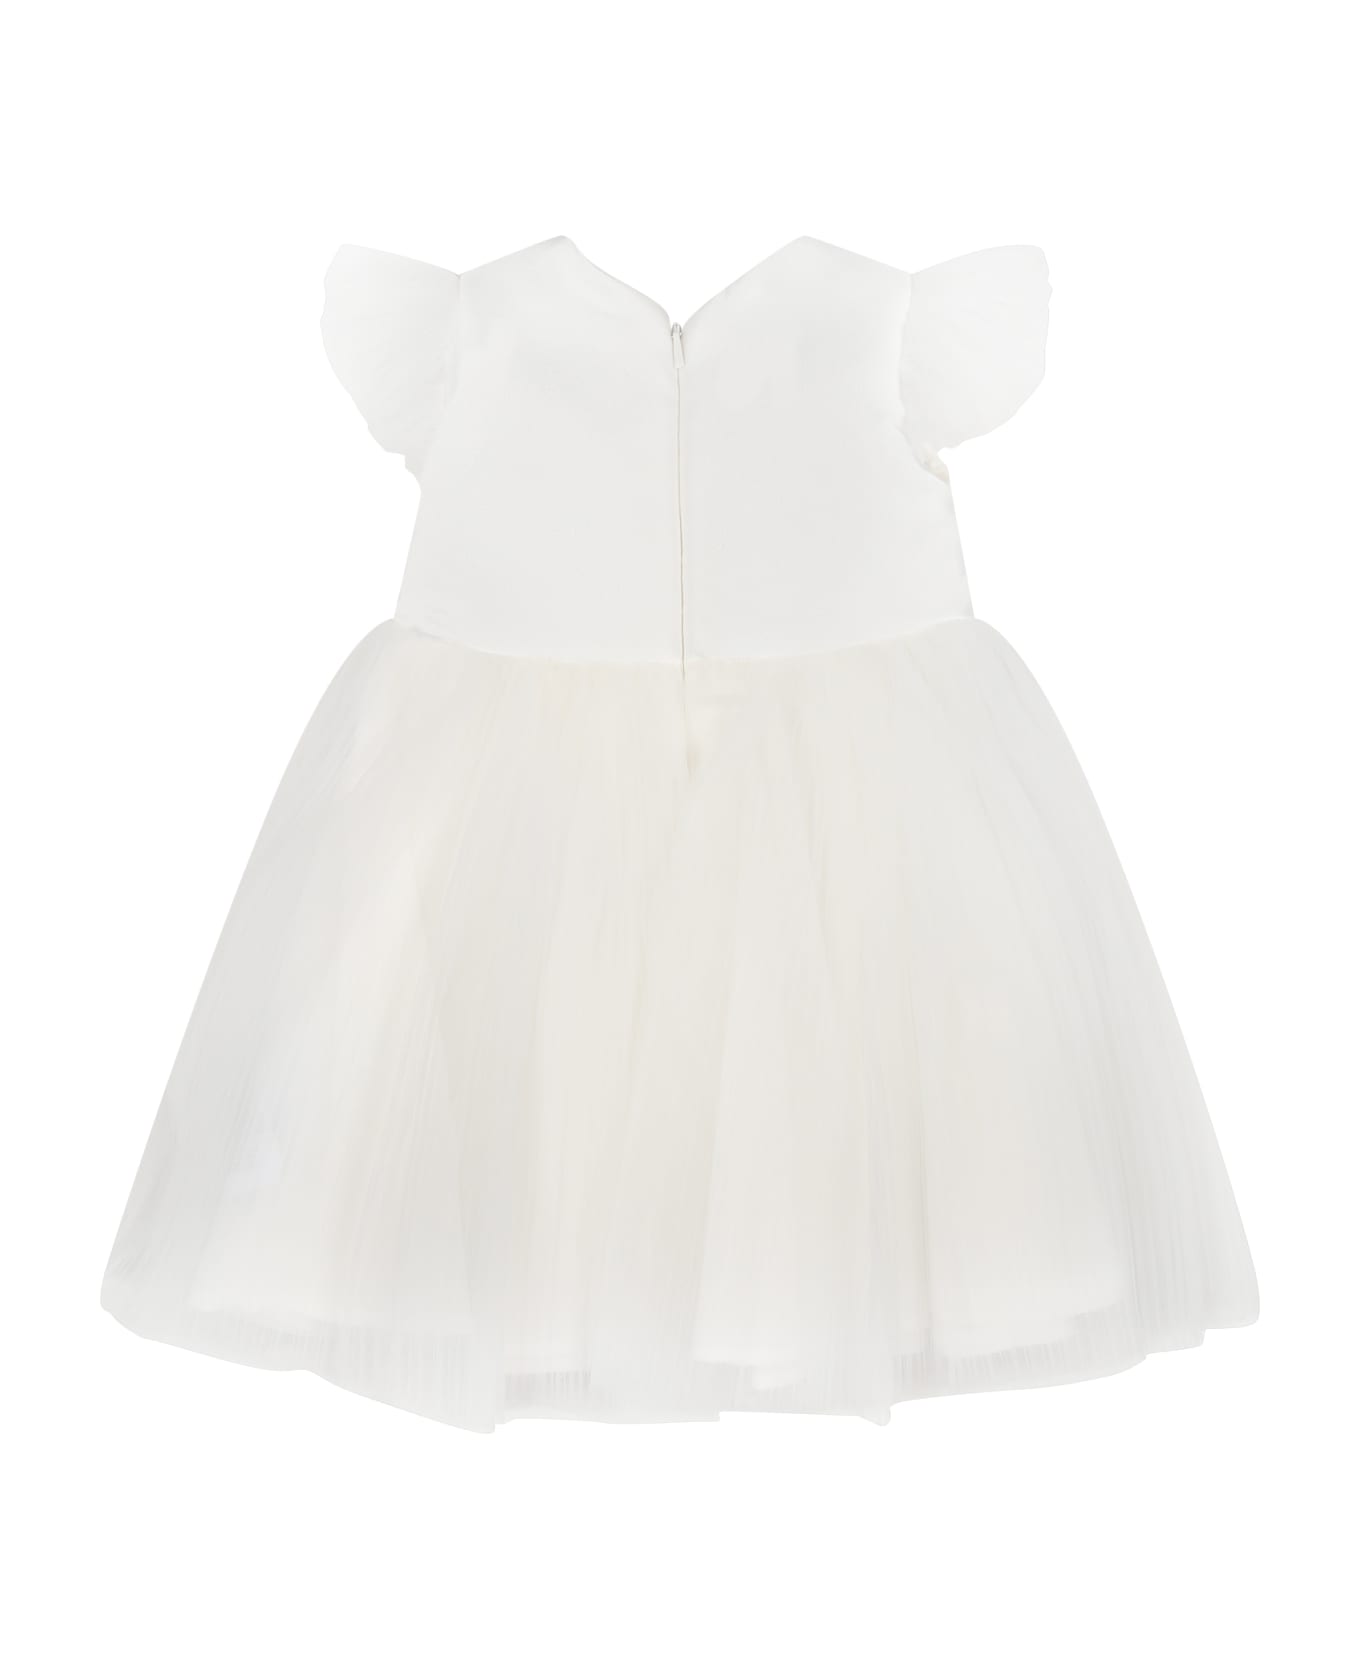 Monnalisa White Tulle Dress For Baby Girl - White